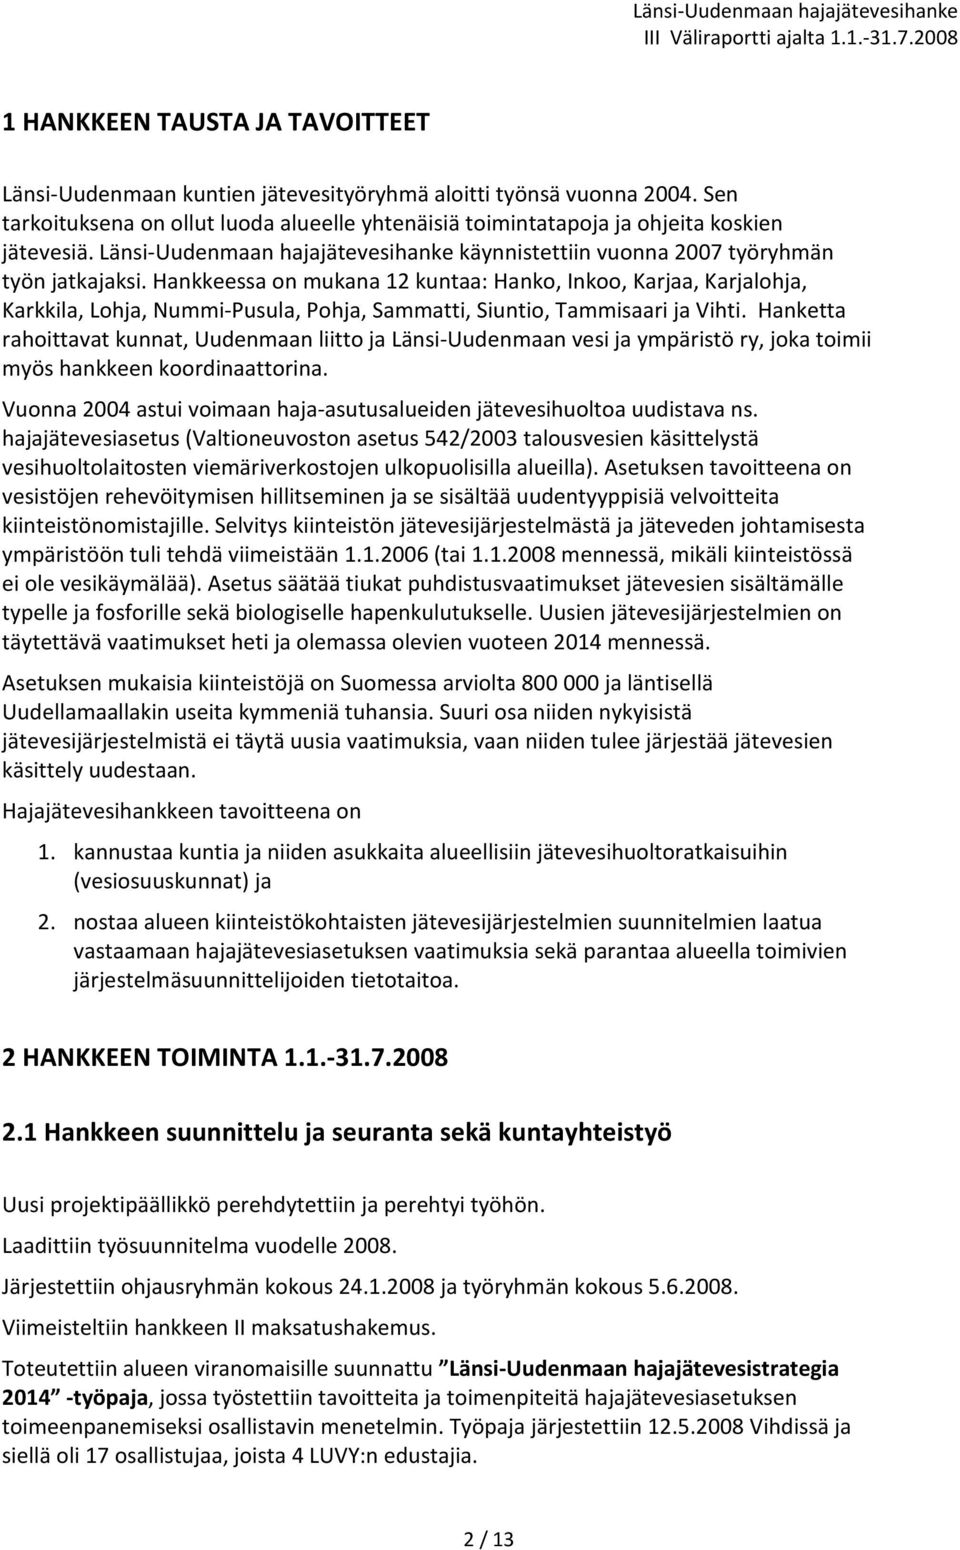 Hankkeessa on mukana 12 kuntaa: Hanko, Inkoo, Karjaa, Karjalohja, Karkkila, Lohja, Nummi-Pusula, Pohja, Sammatti, Siuntio, Tammisaari ja Vihti.